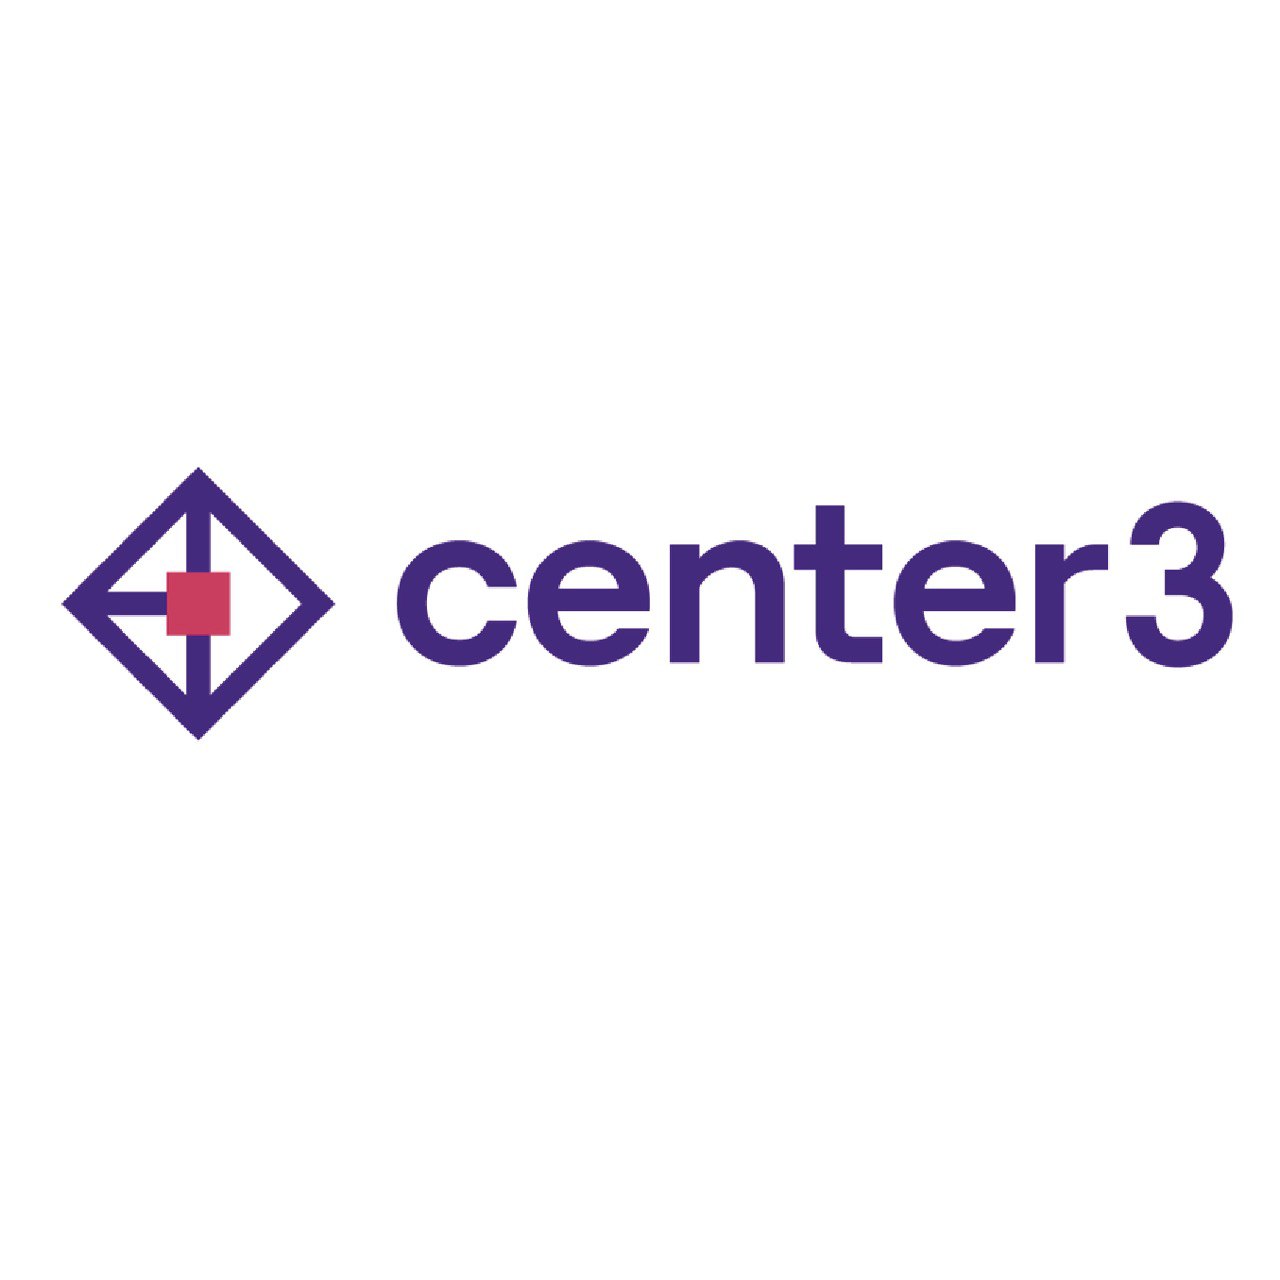 Center 3